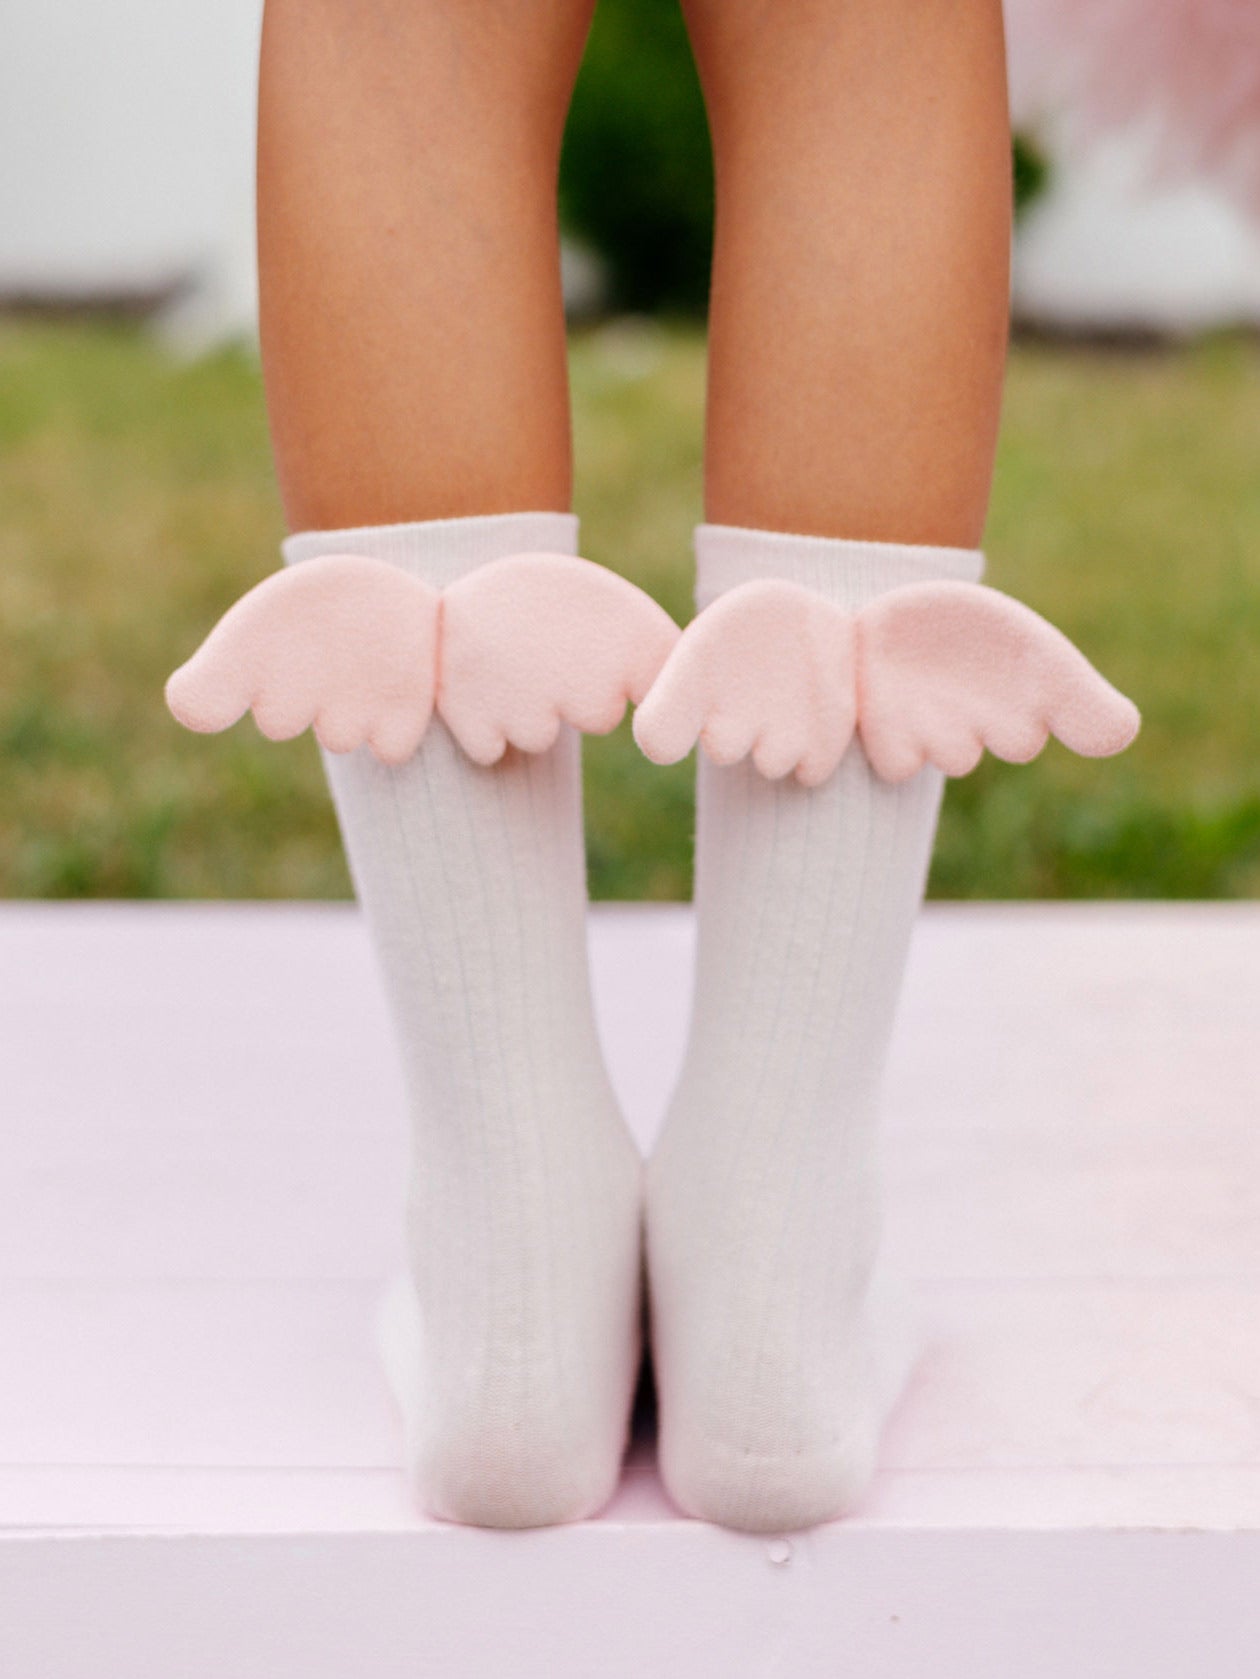 NENA BEBE Knee-high socks with wings-B5008 pink